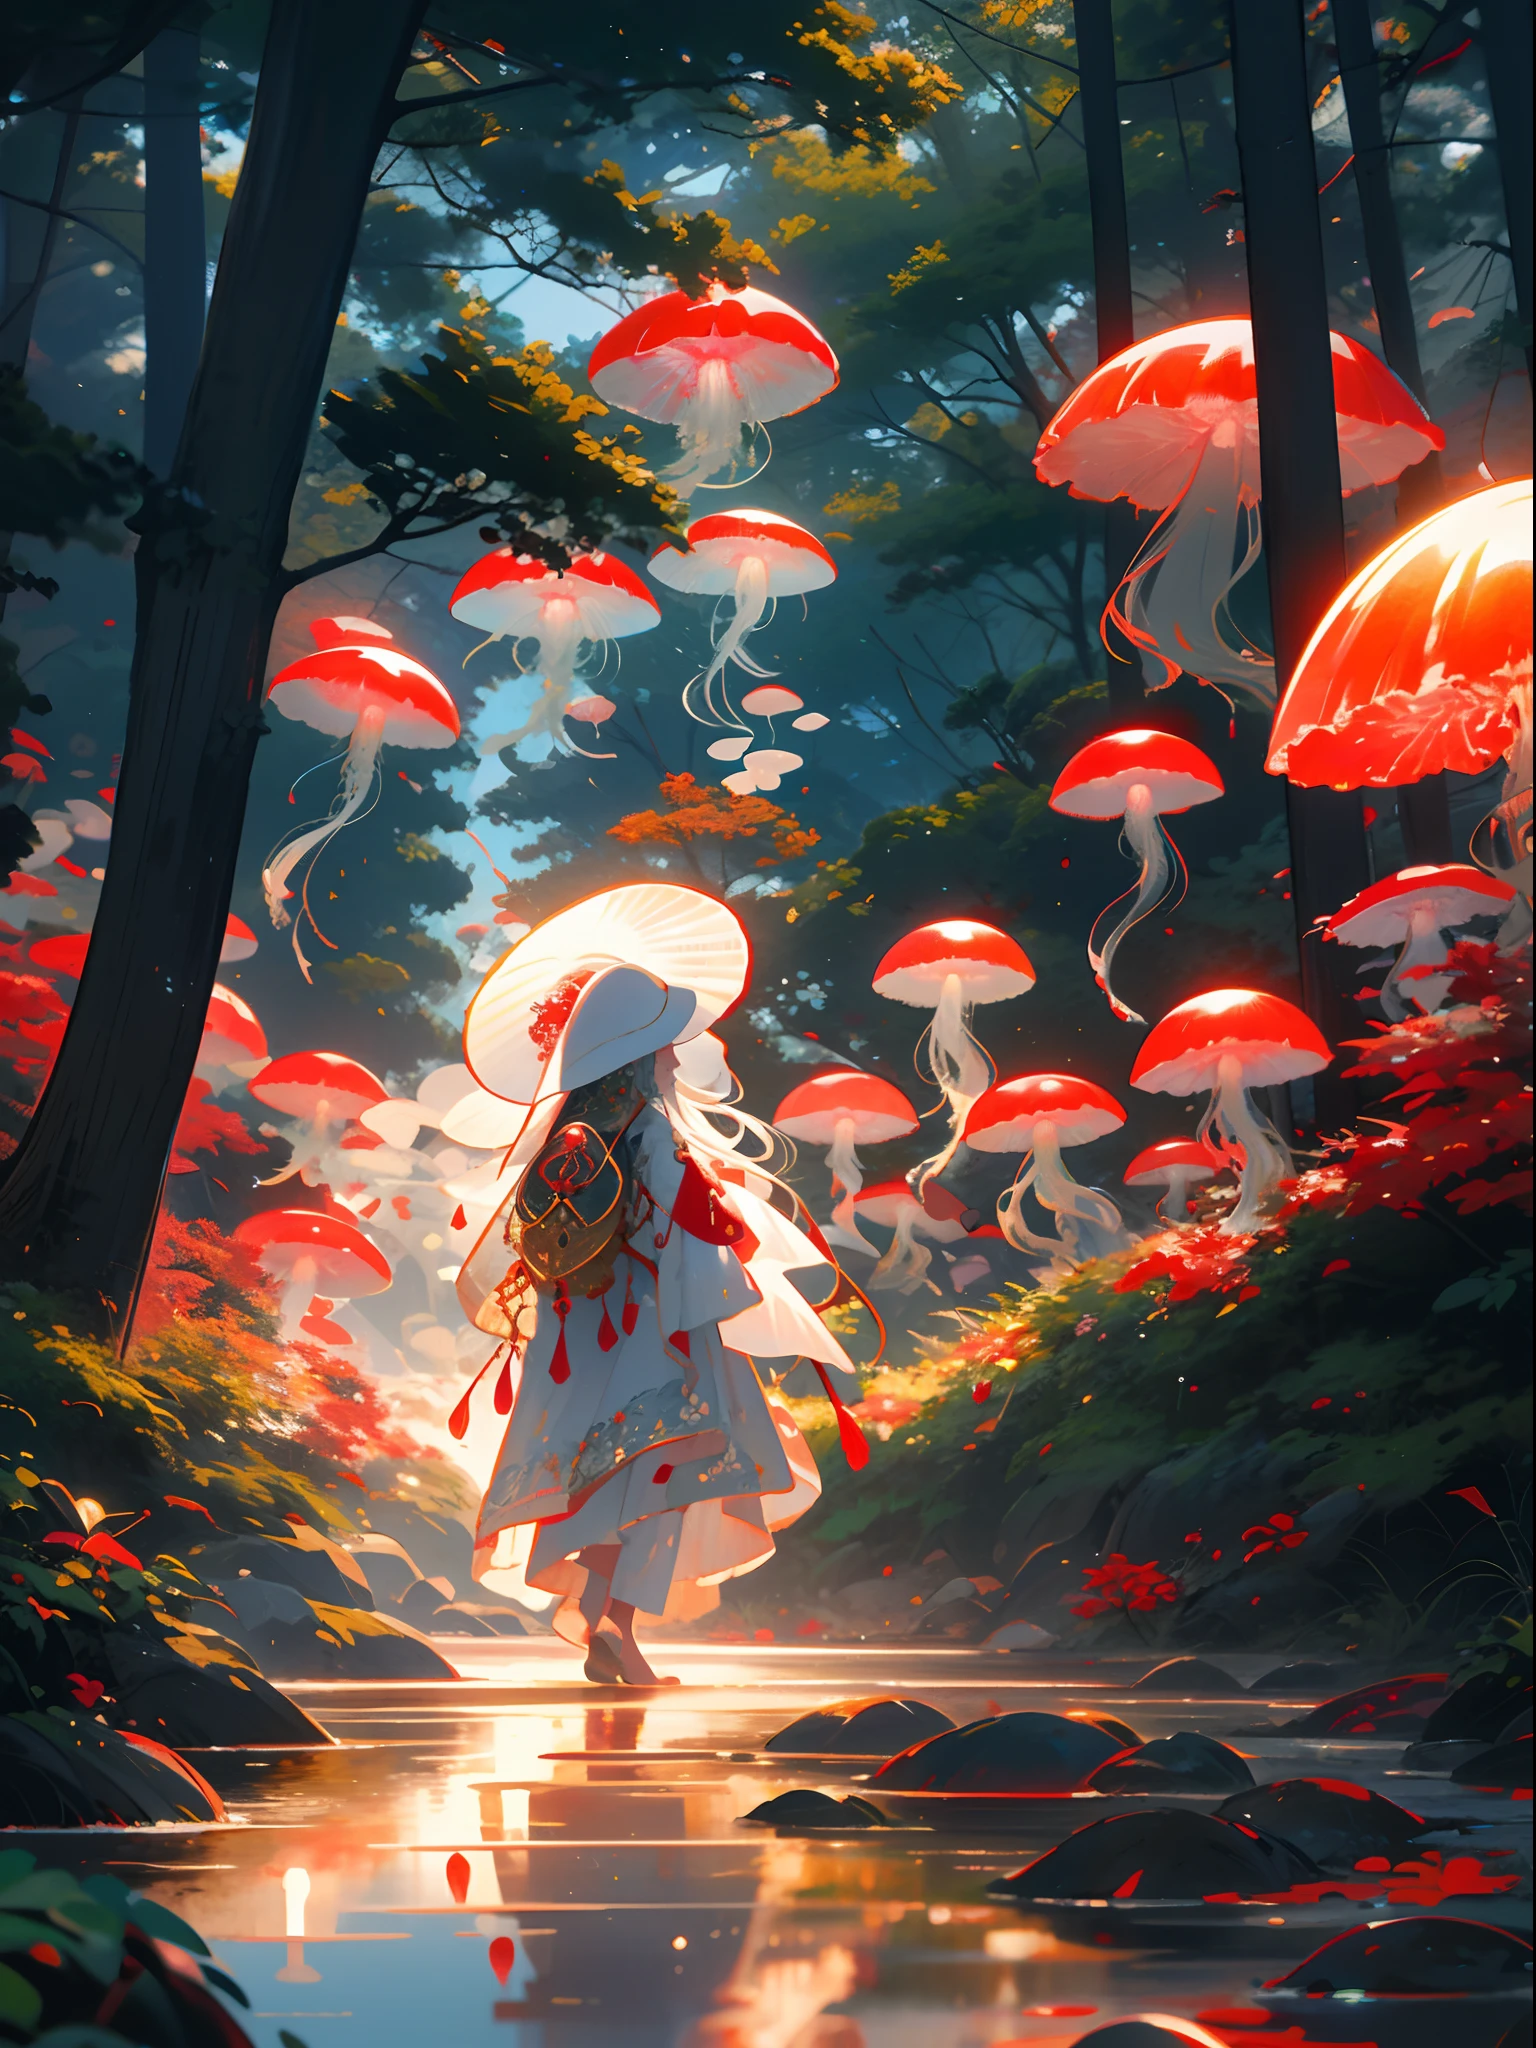 Rote Qualle,jellyfishWald, 1 Mädchen, lange Haare, Kleid, Allein, weißes Haar,roter Hut,Pilz, Natur, draußen, Baum, gehen, Wald, Wasser